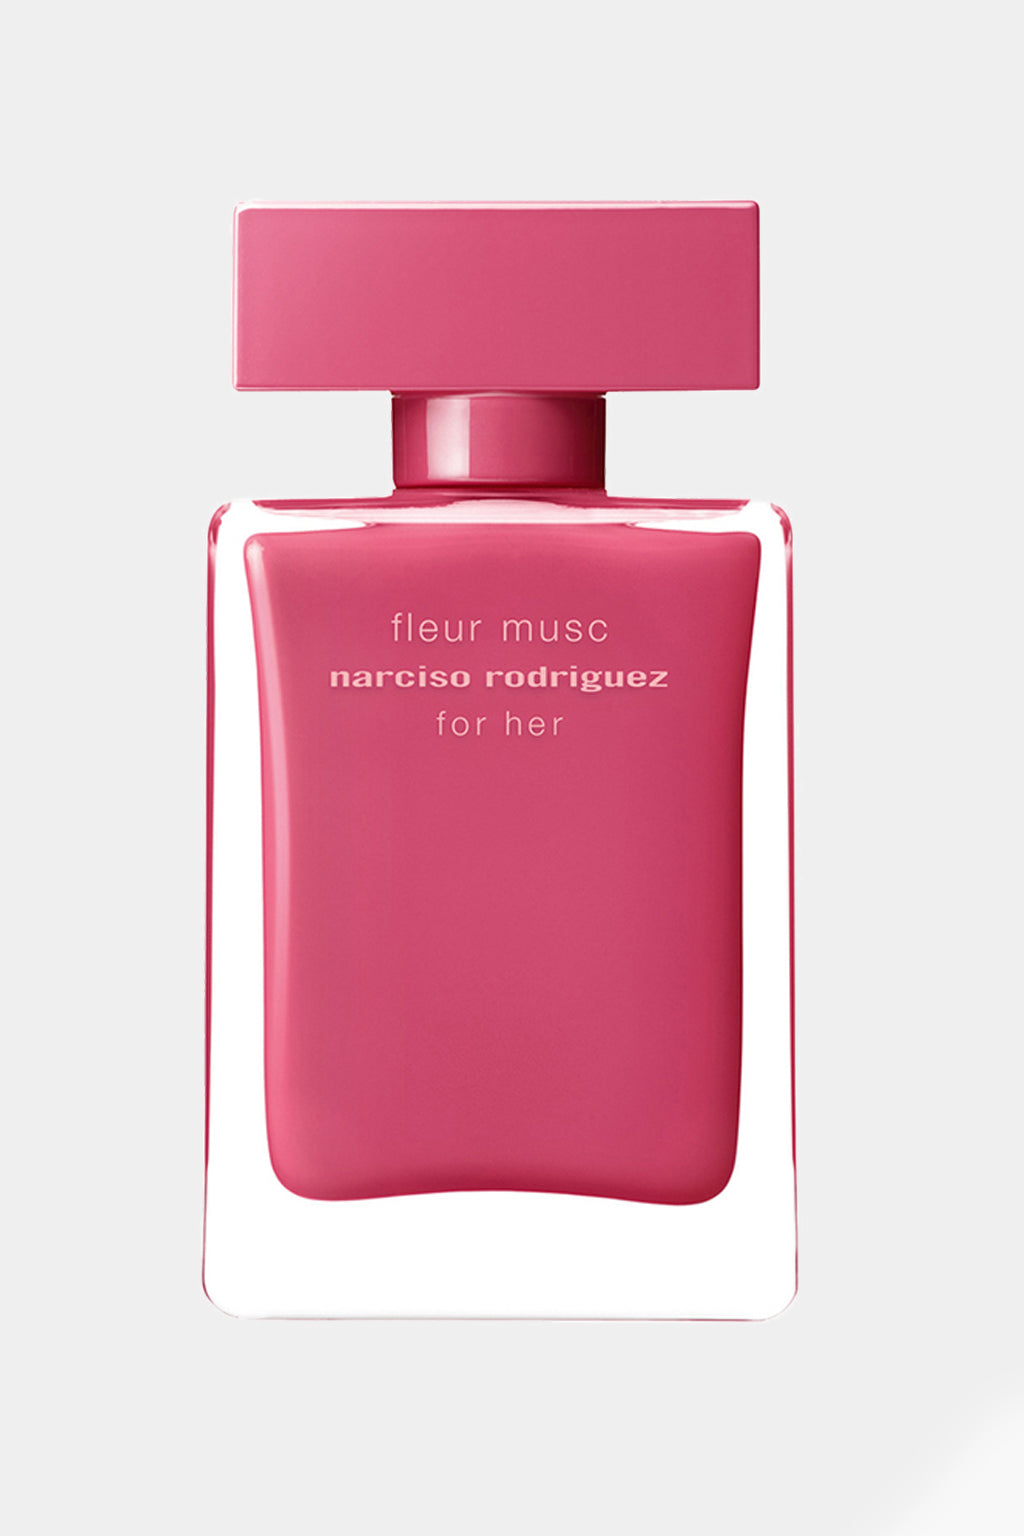 Narciso Rodriguez - Fleur Musc Eau de Parfum